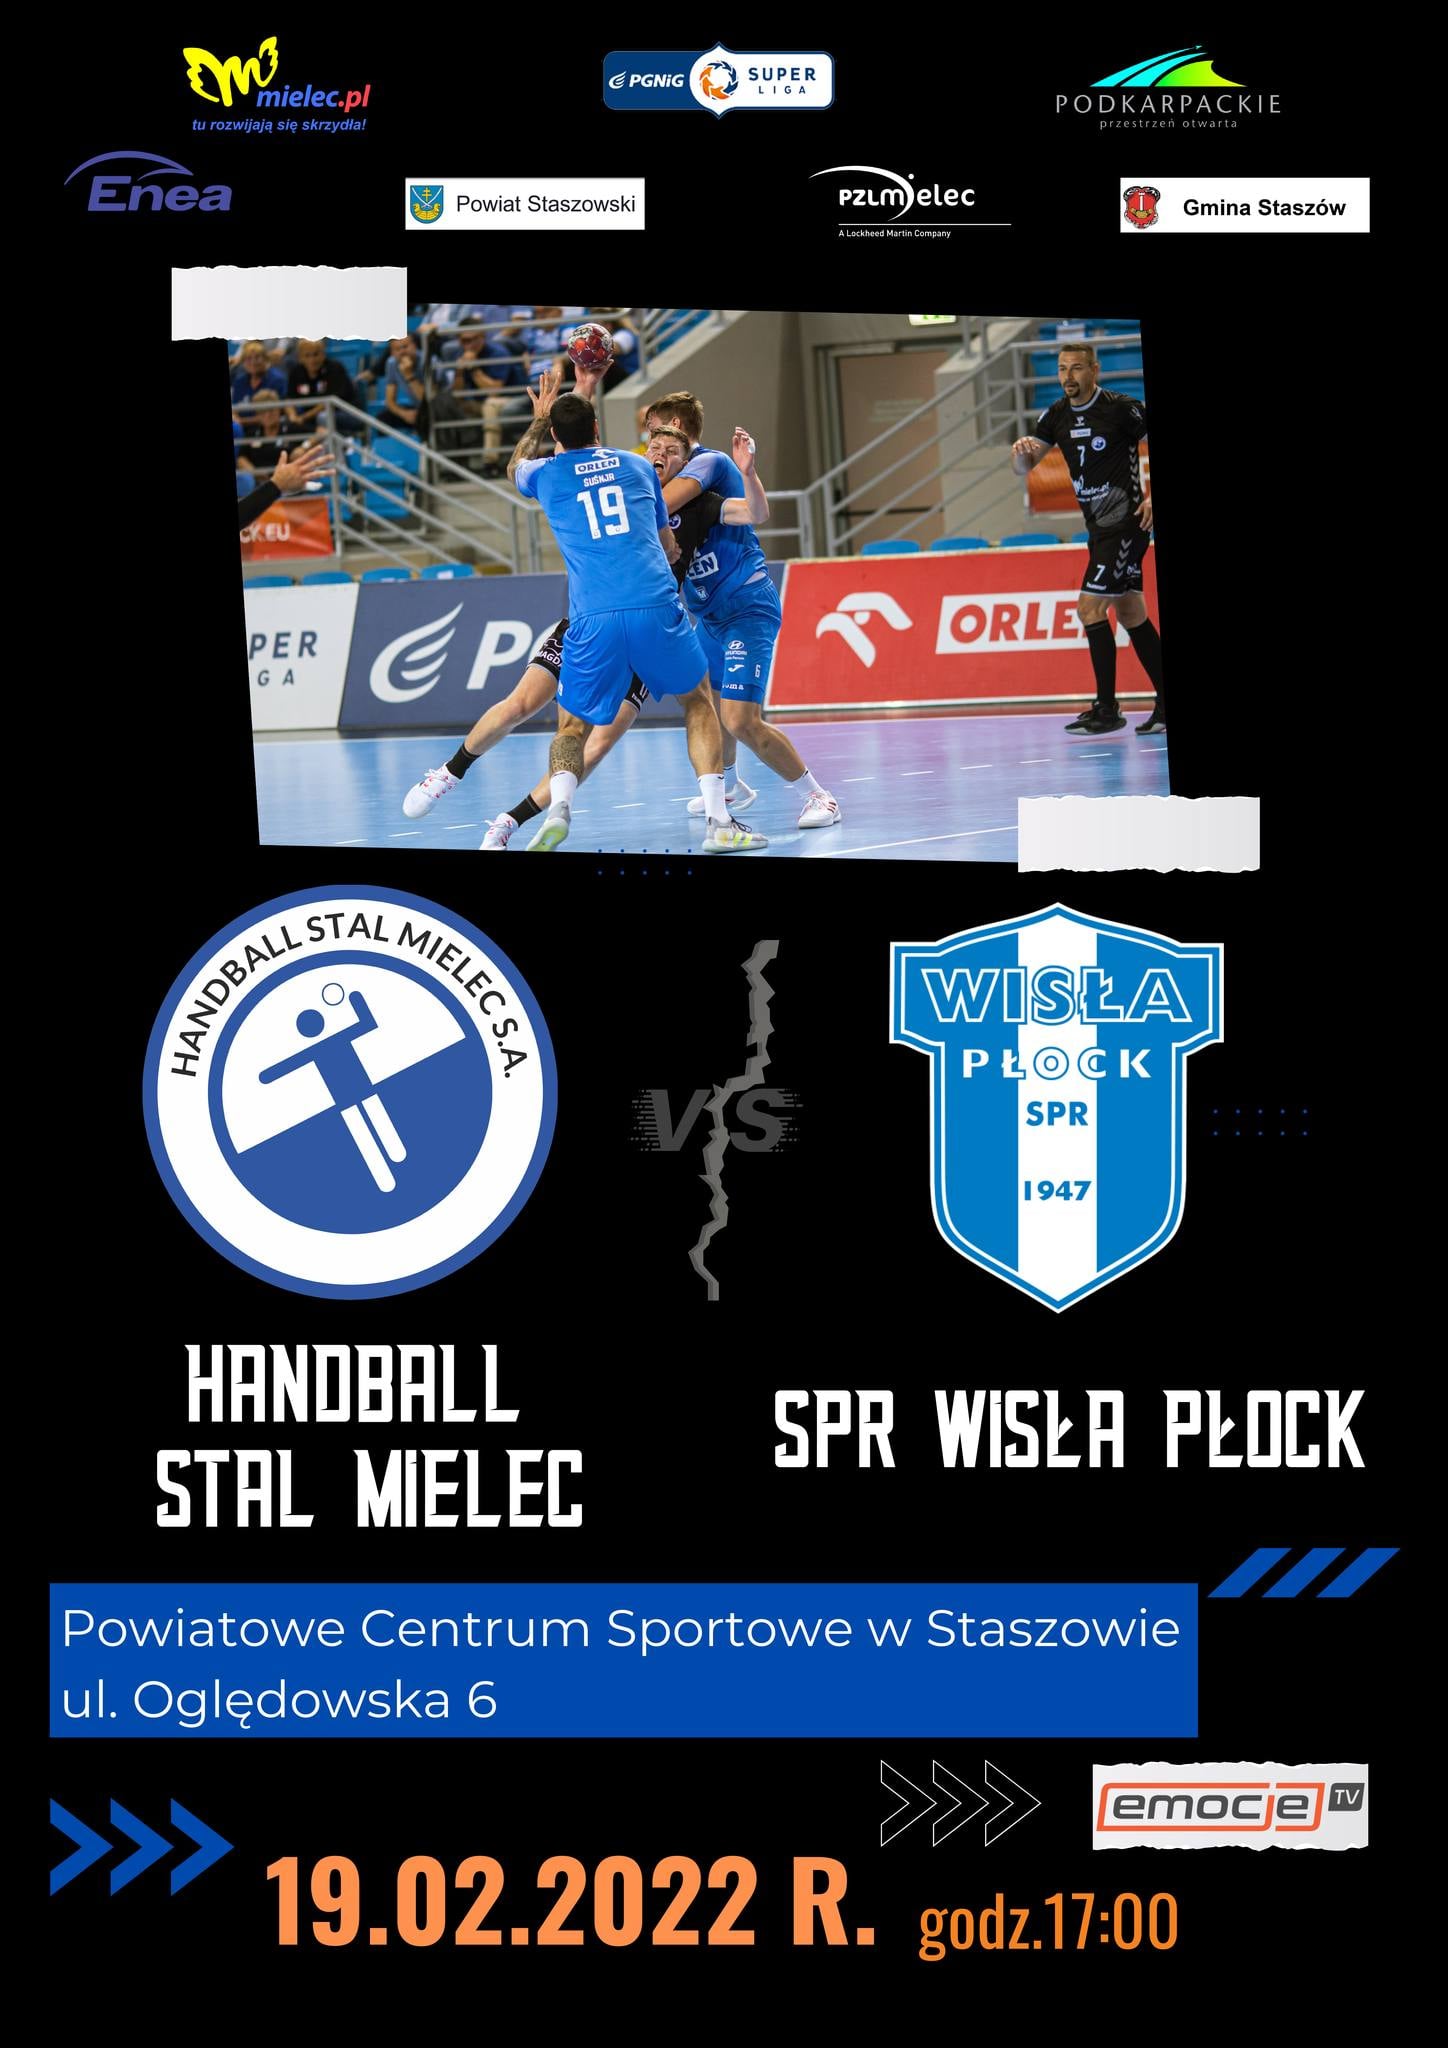 Plakat informacyjny: Mecz piłki ręcznej PGNiG Handball Stal Mielec – SPR Wisła Płock. 19.02.2022 r.,  godz. 17:00, Powiatowe Centrum Sportowe w Staszowie. Wstęp wolny.